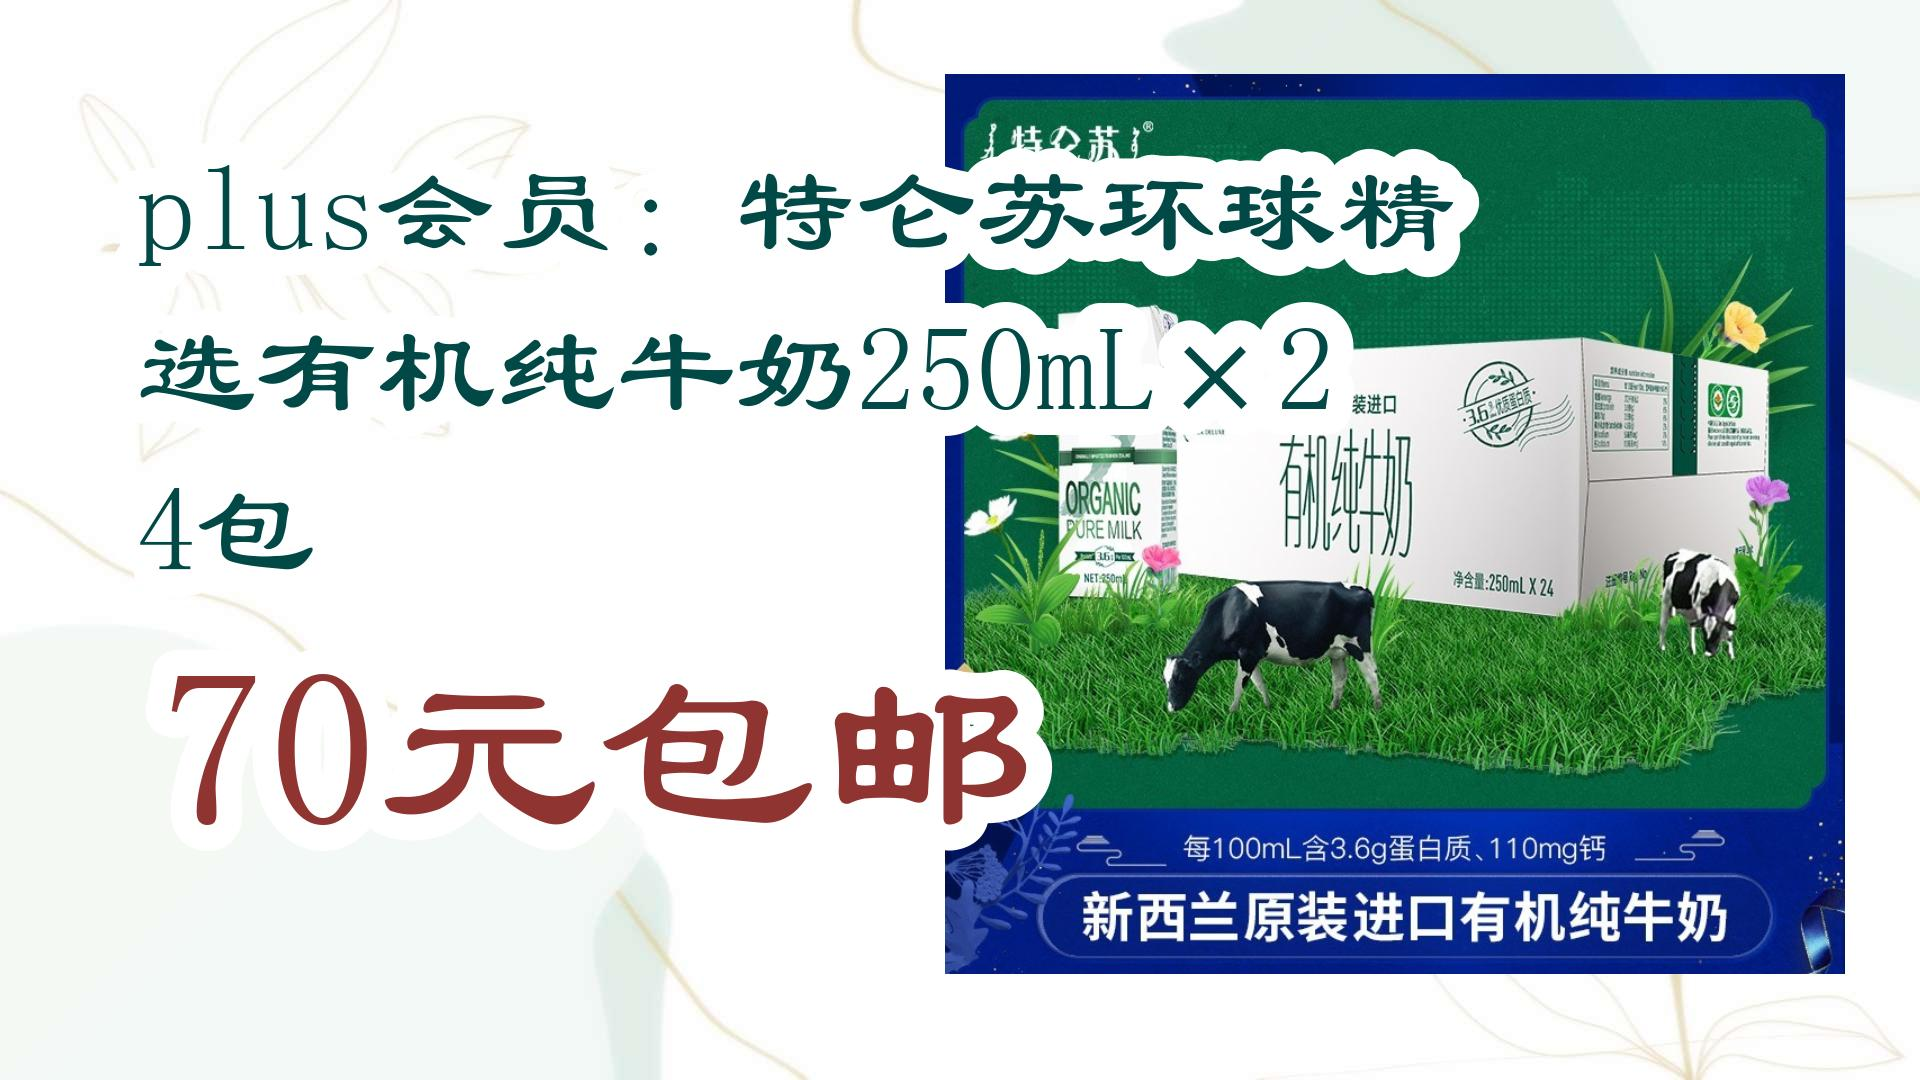 【好价优惠】plus会员:特仑苏环球精选有机纯牛奶250ml×24包 70元包